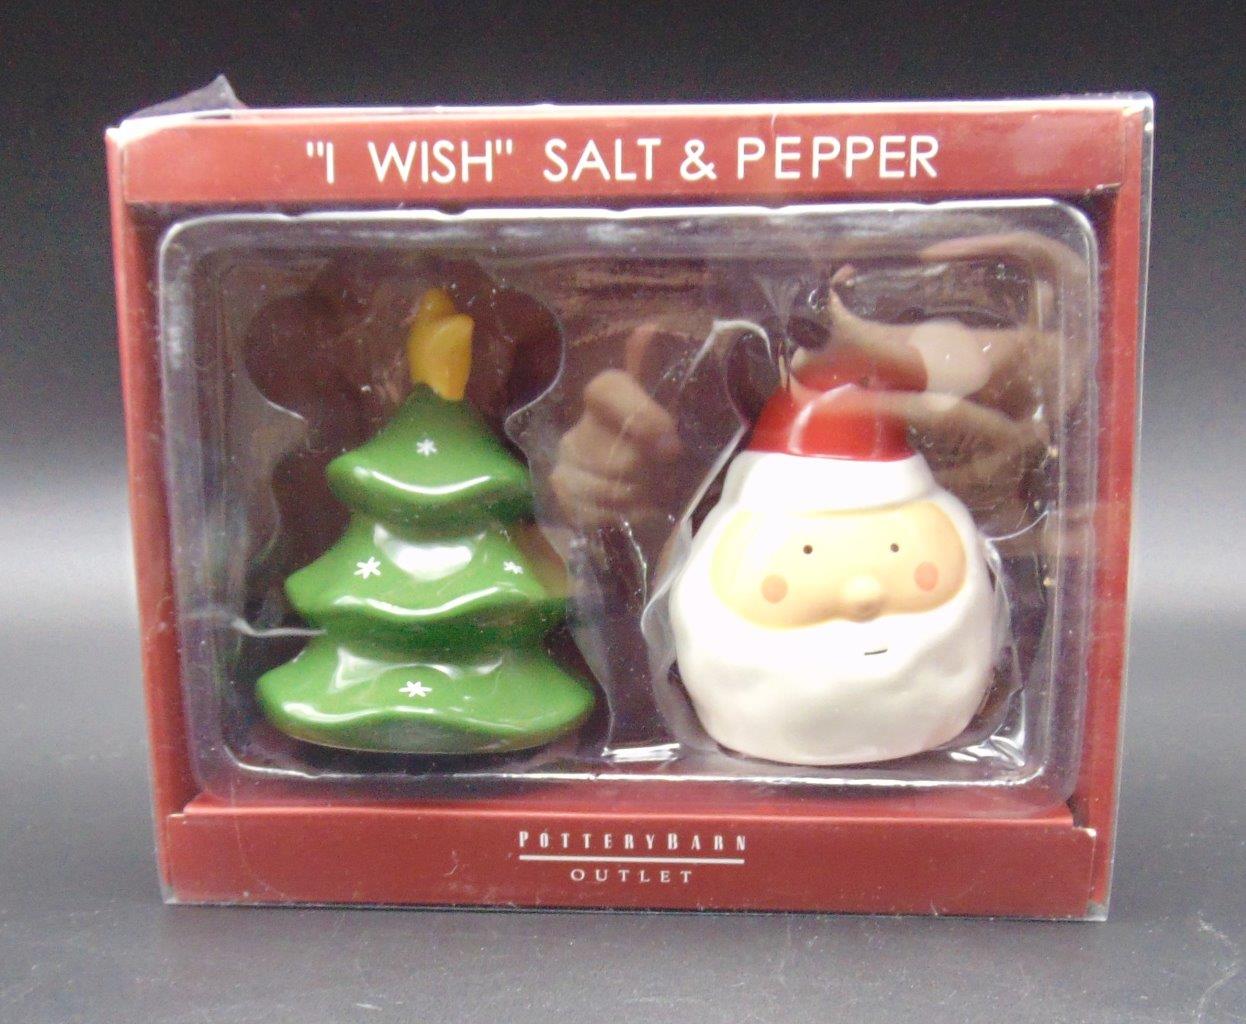 Pottery Barn Santa's Sled Salt & Pepper Shakers